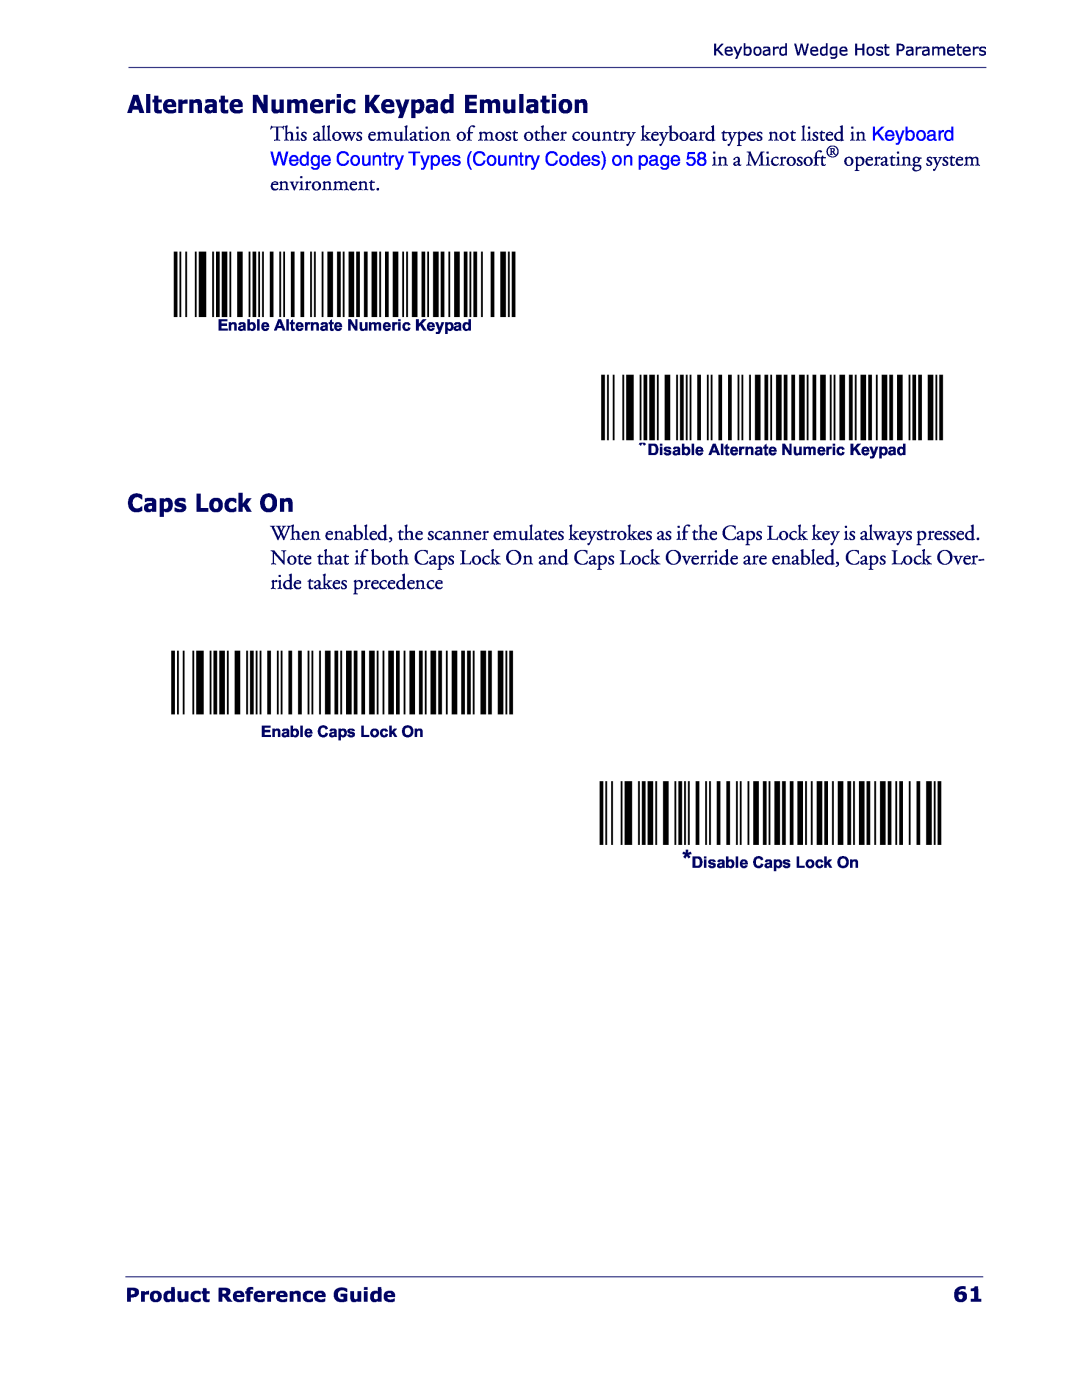 Datalogic Scanning QD 2300 manual Alternate Numeric Keypad Emulation, Caps Lock On, Product Reference Guide 